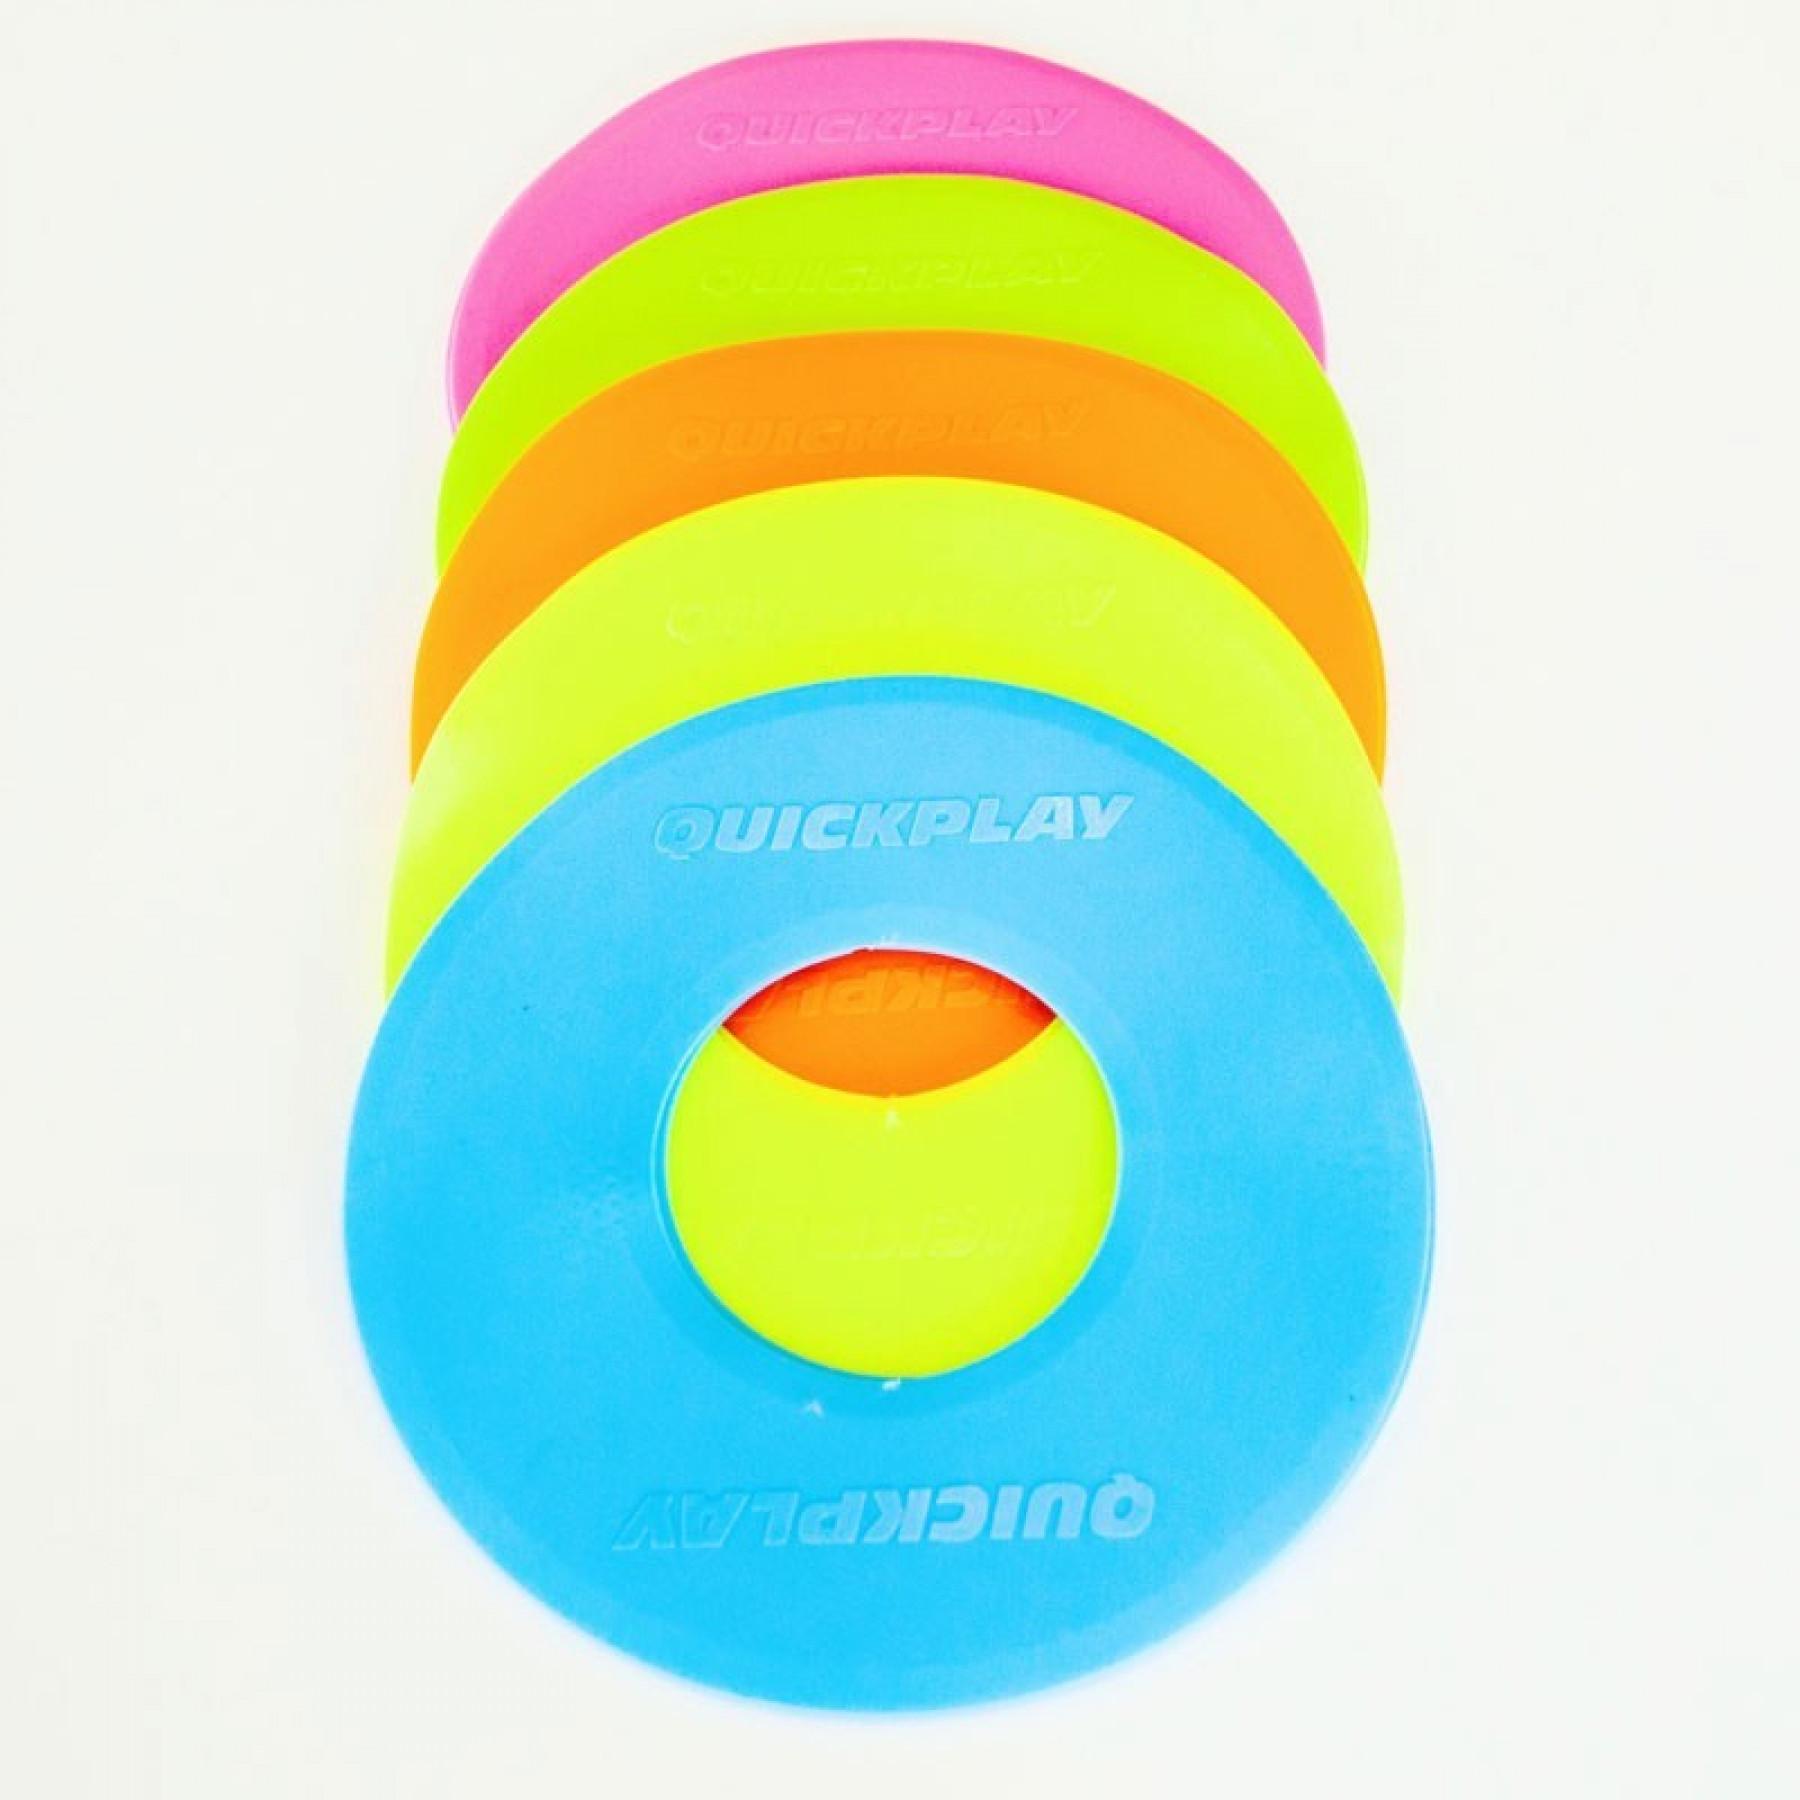 Paquete de 10 discos de marcado Quickplay multicolore